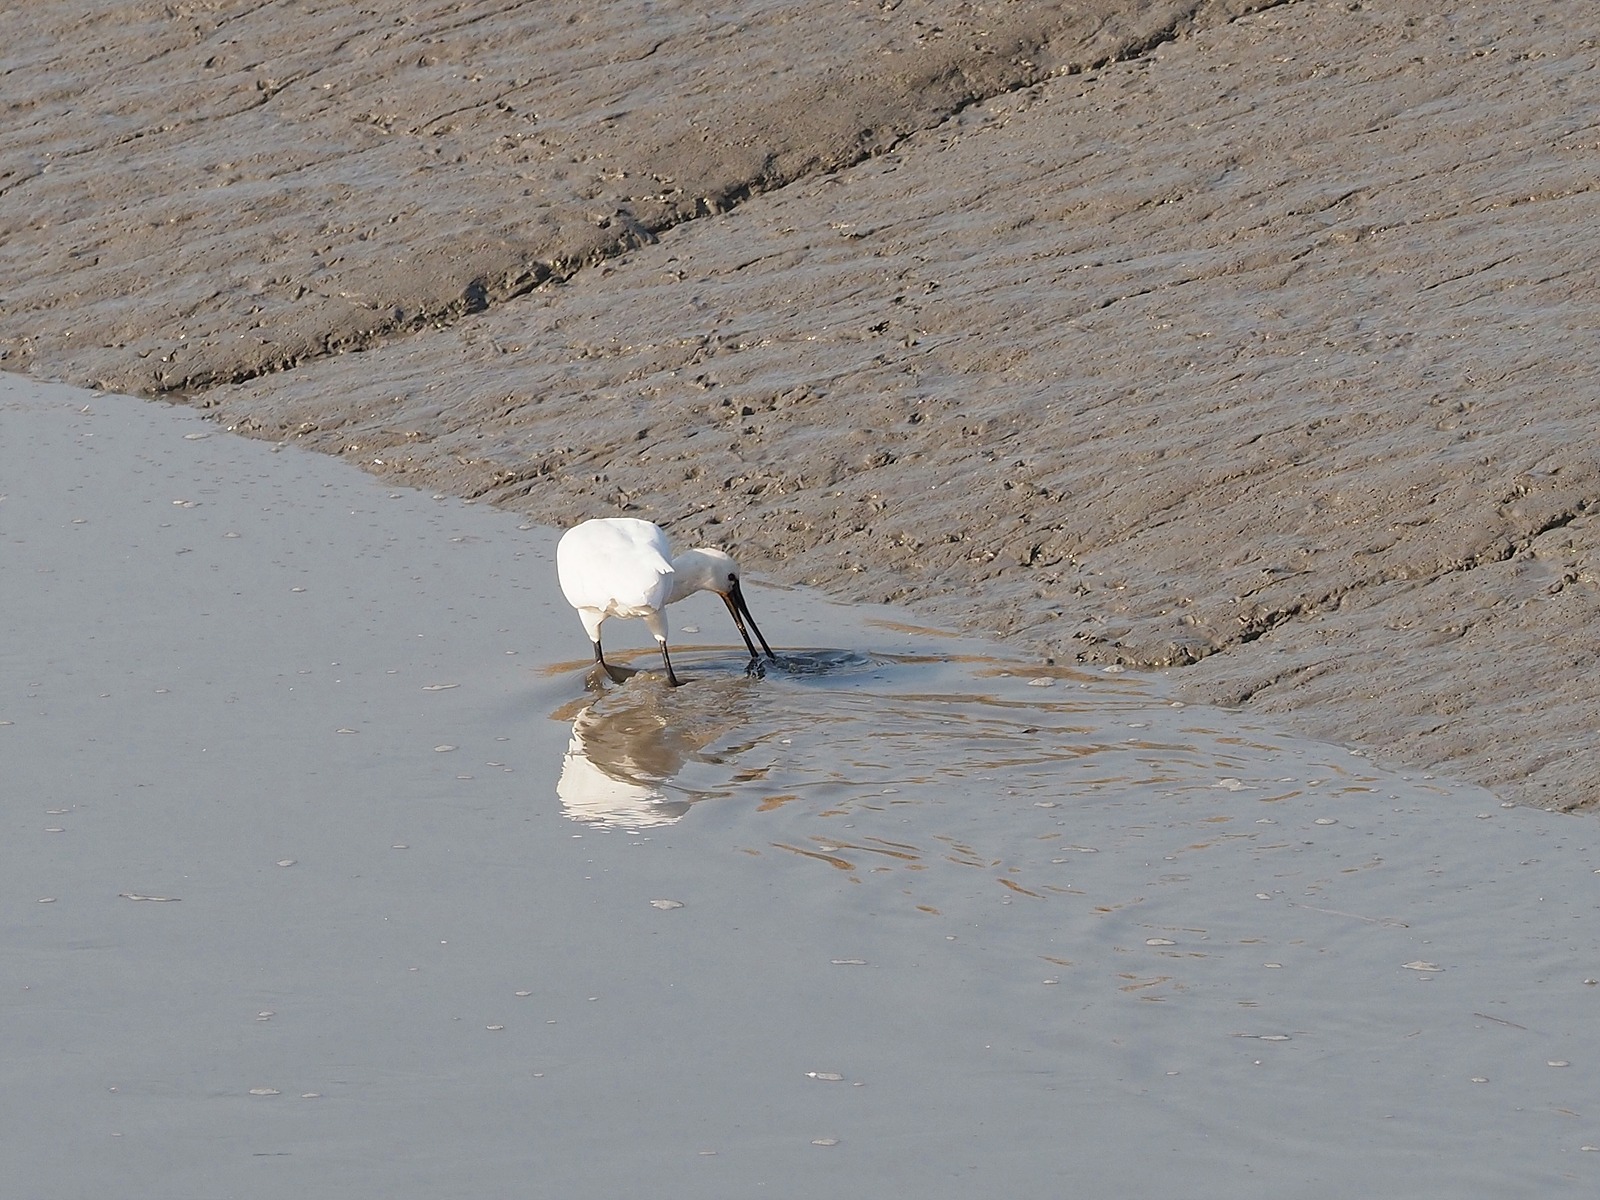 흰 몸에 검은 부리를 가진 저어새 한 마리가 갯골에서 부리를 물 속에 넣고 먹이를 찾고 있다.